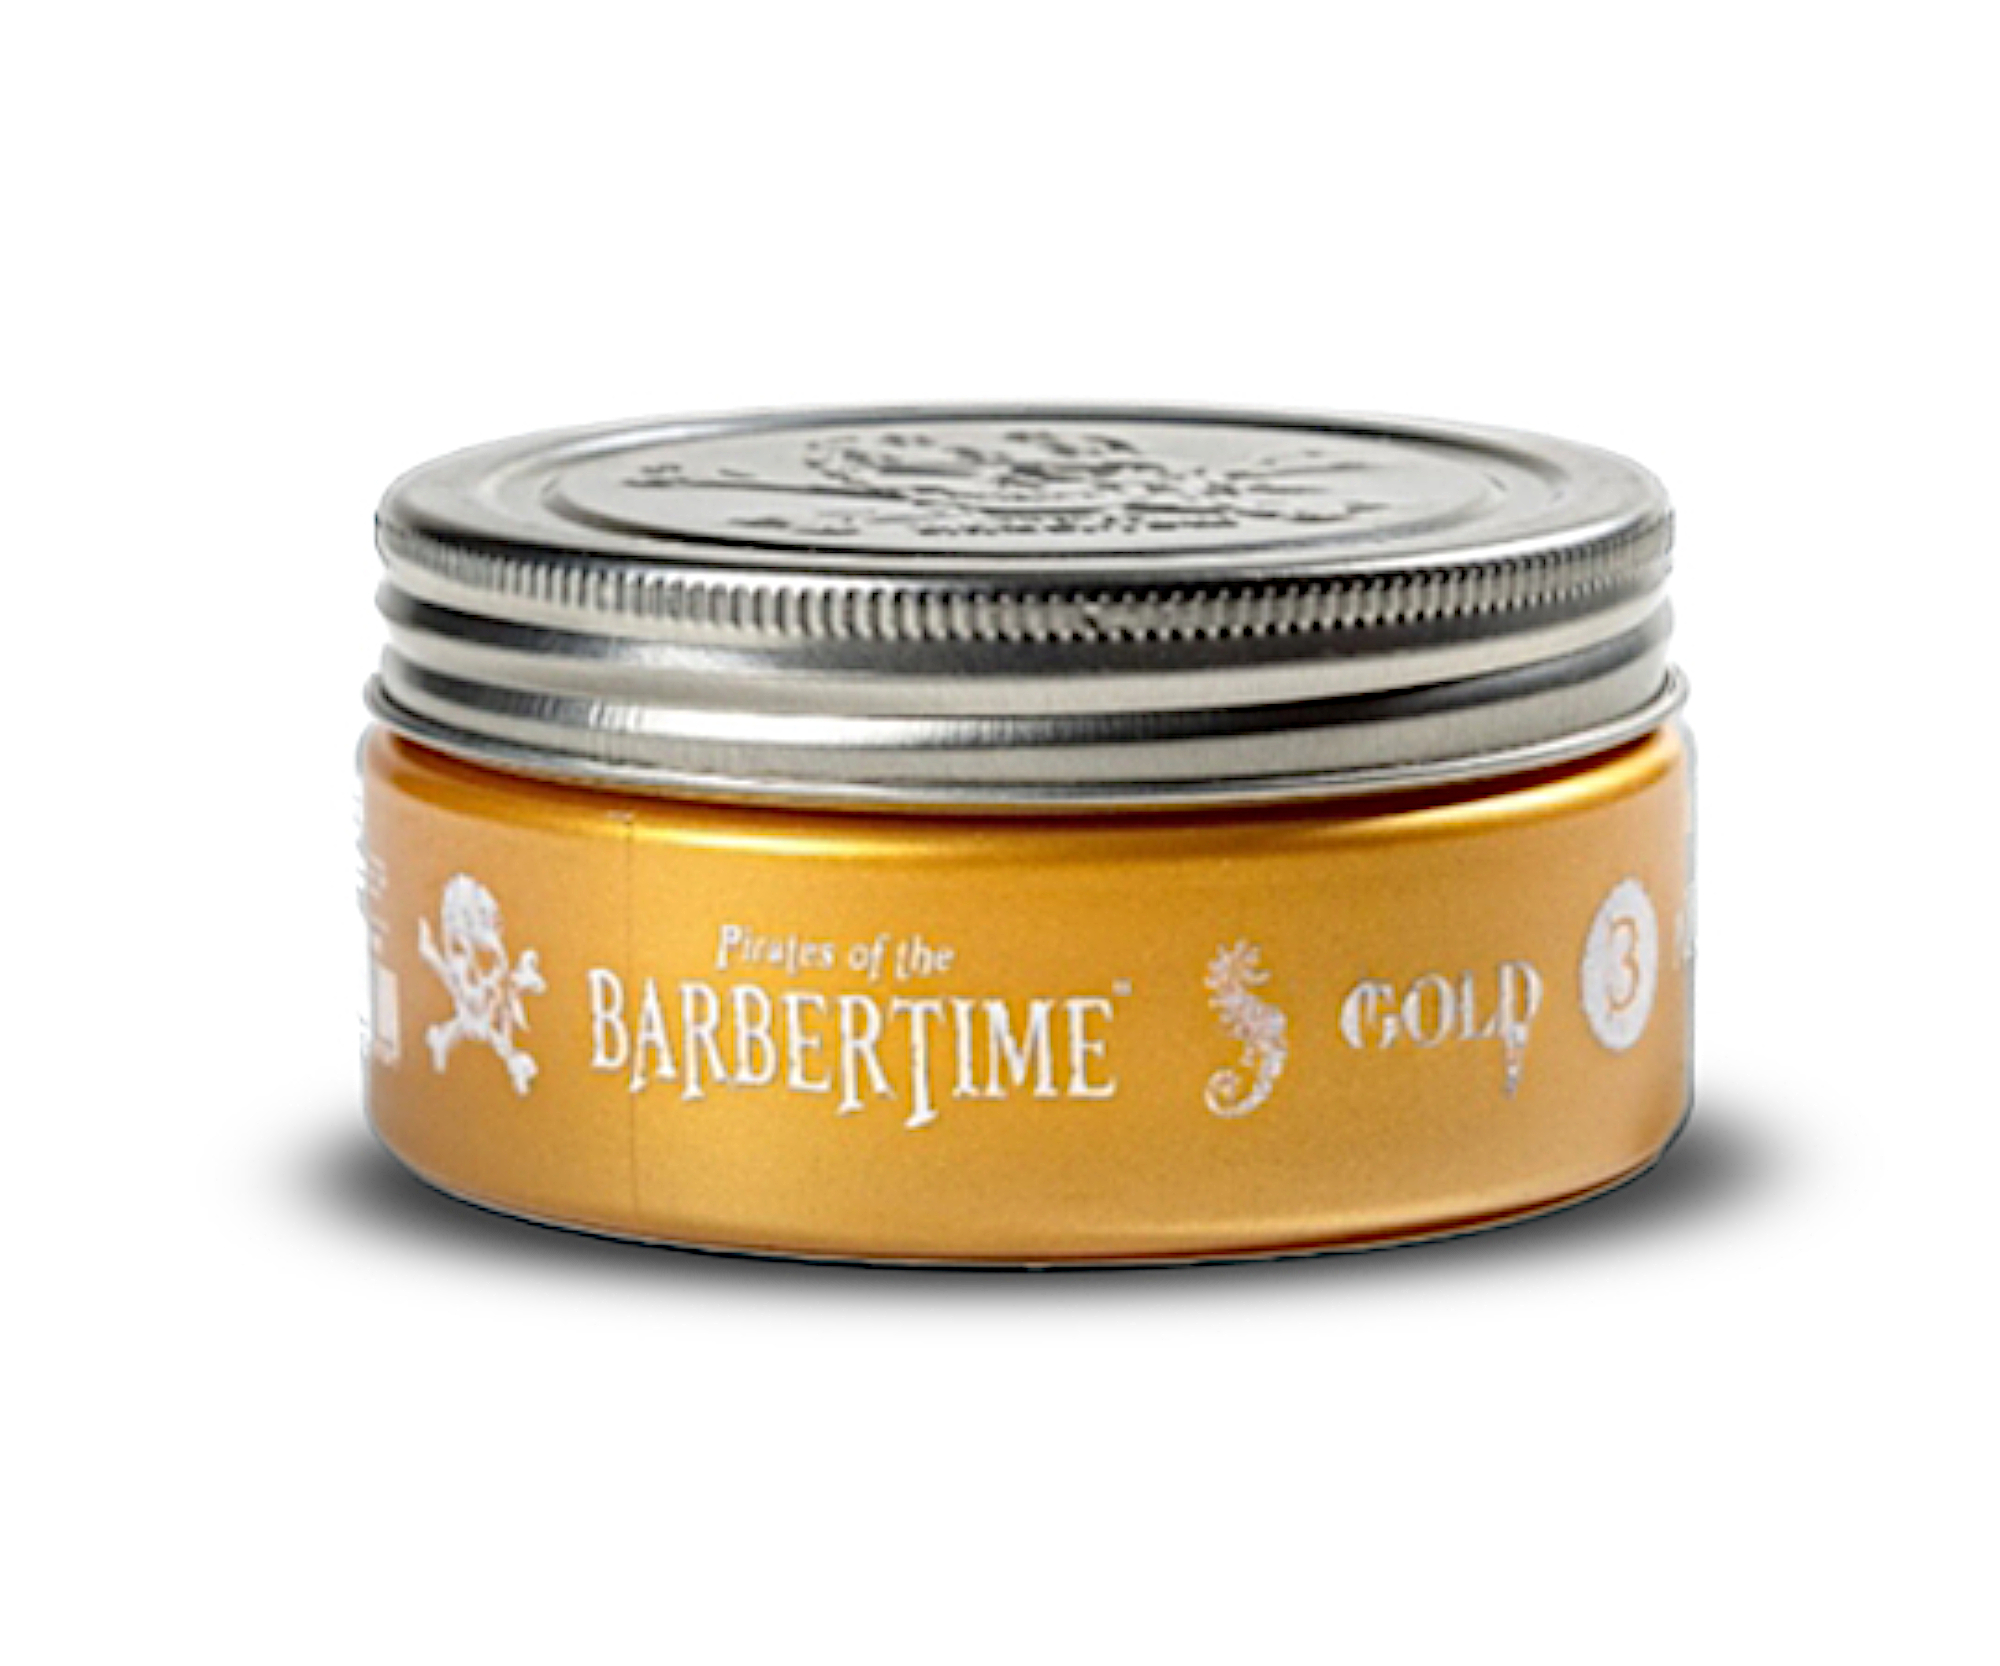 Pomáda na vlasy se střední fixací a vysokým leskem Barbertime Gold Pomade No. 3 - 150 ml - Pirates of the Barbertime + dárek zdarma